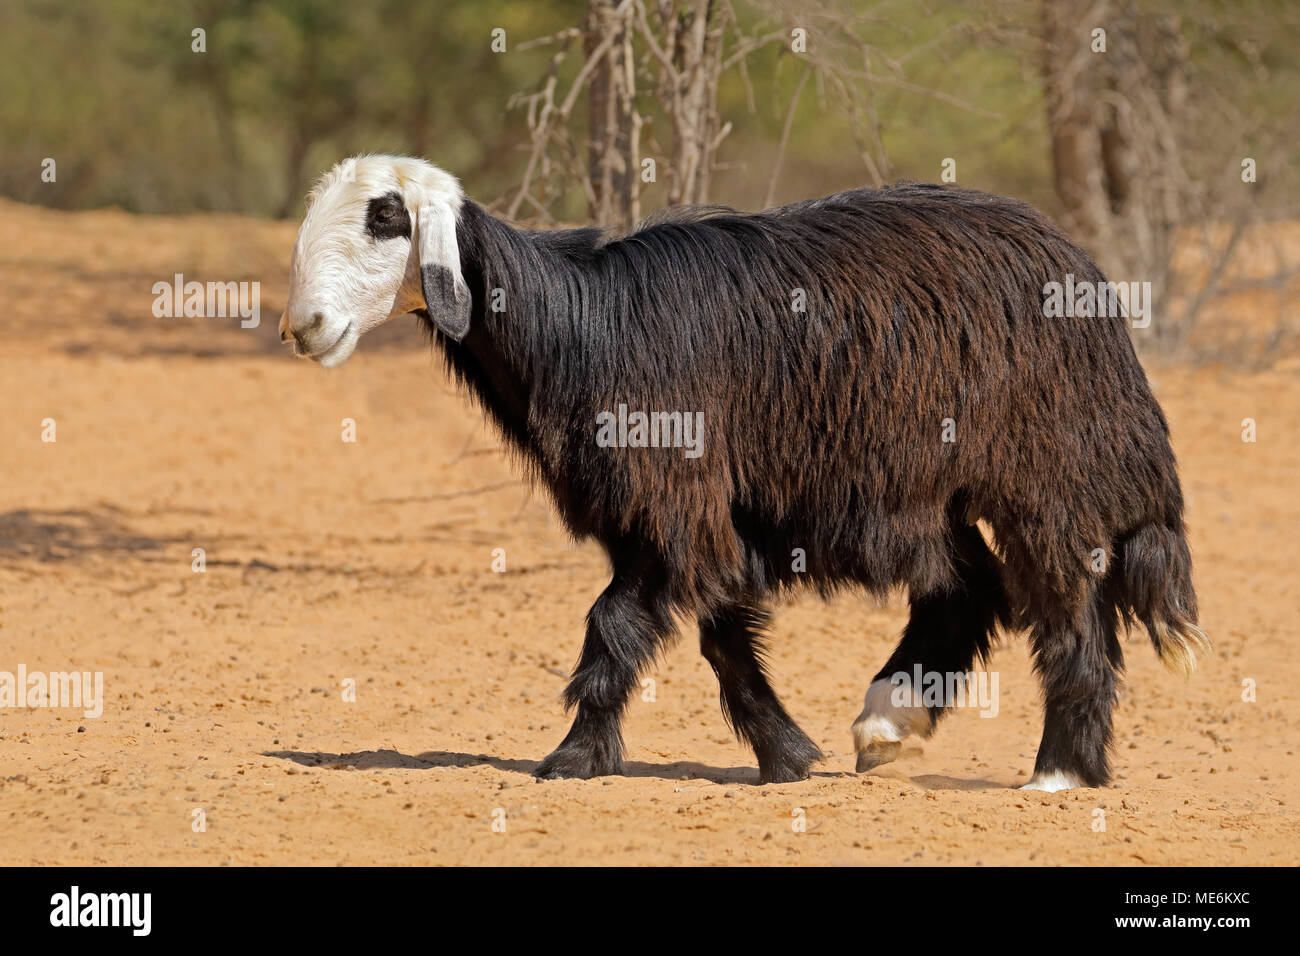 Arabian Nadji - ovini domestici razza del Najd regione della penisola arabica Foto Stock